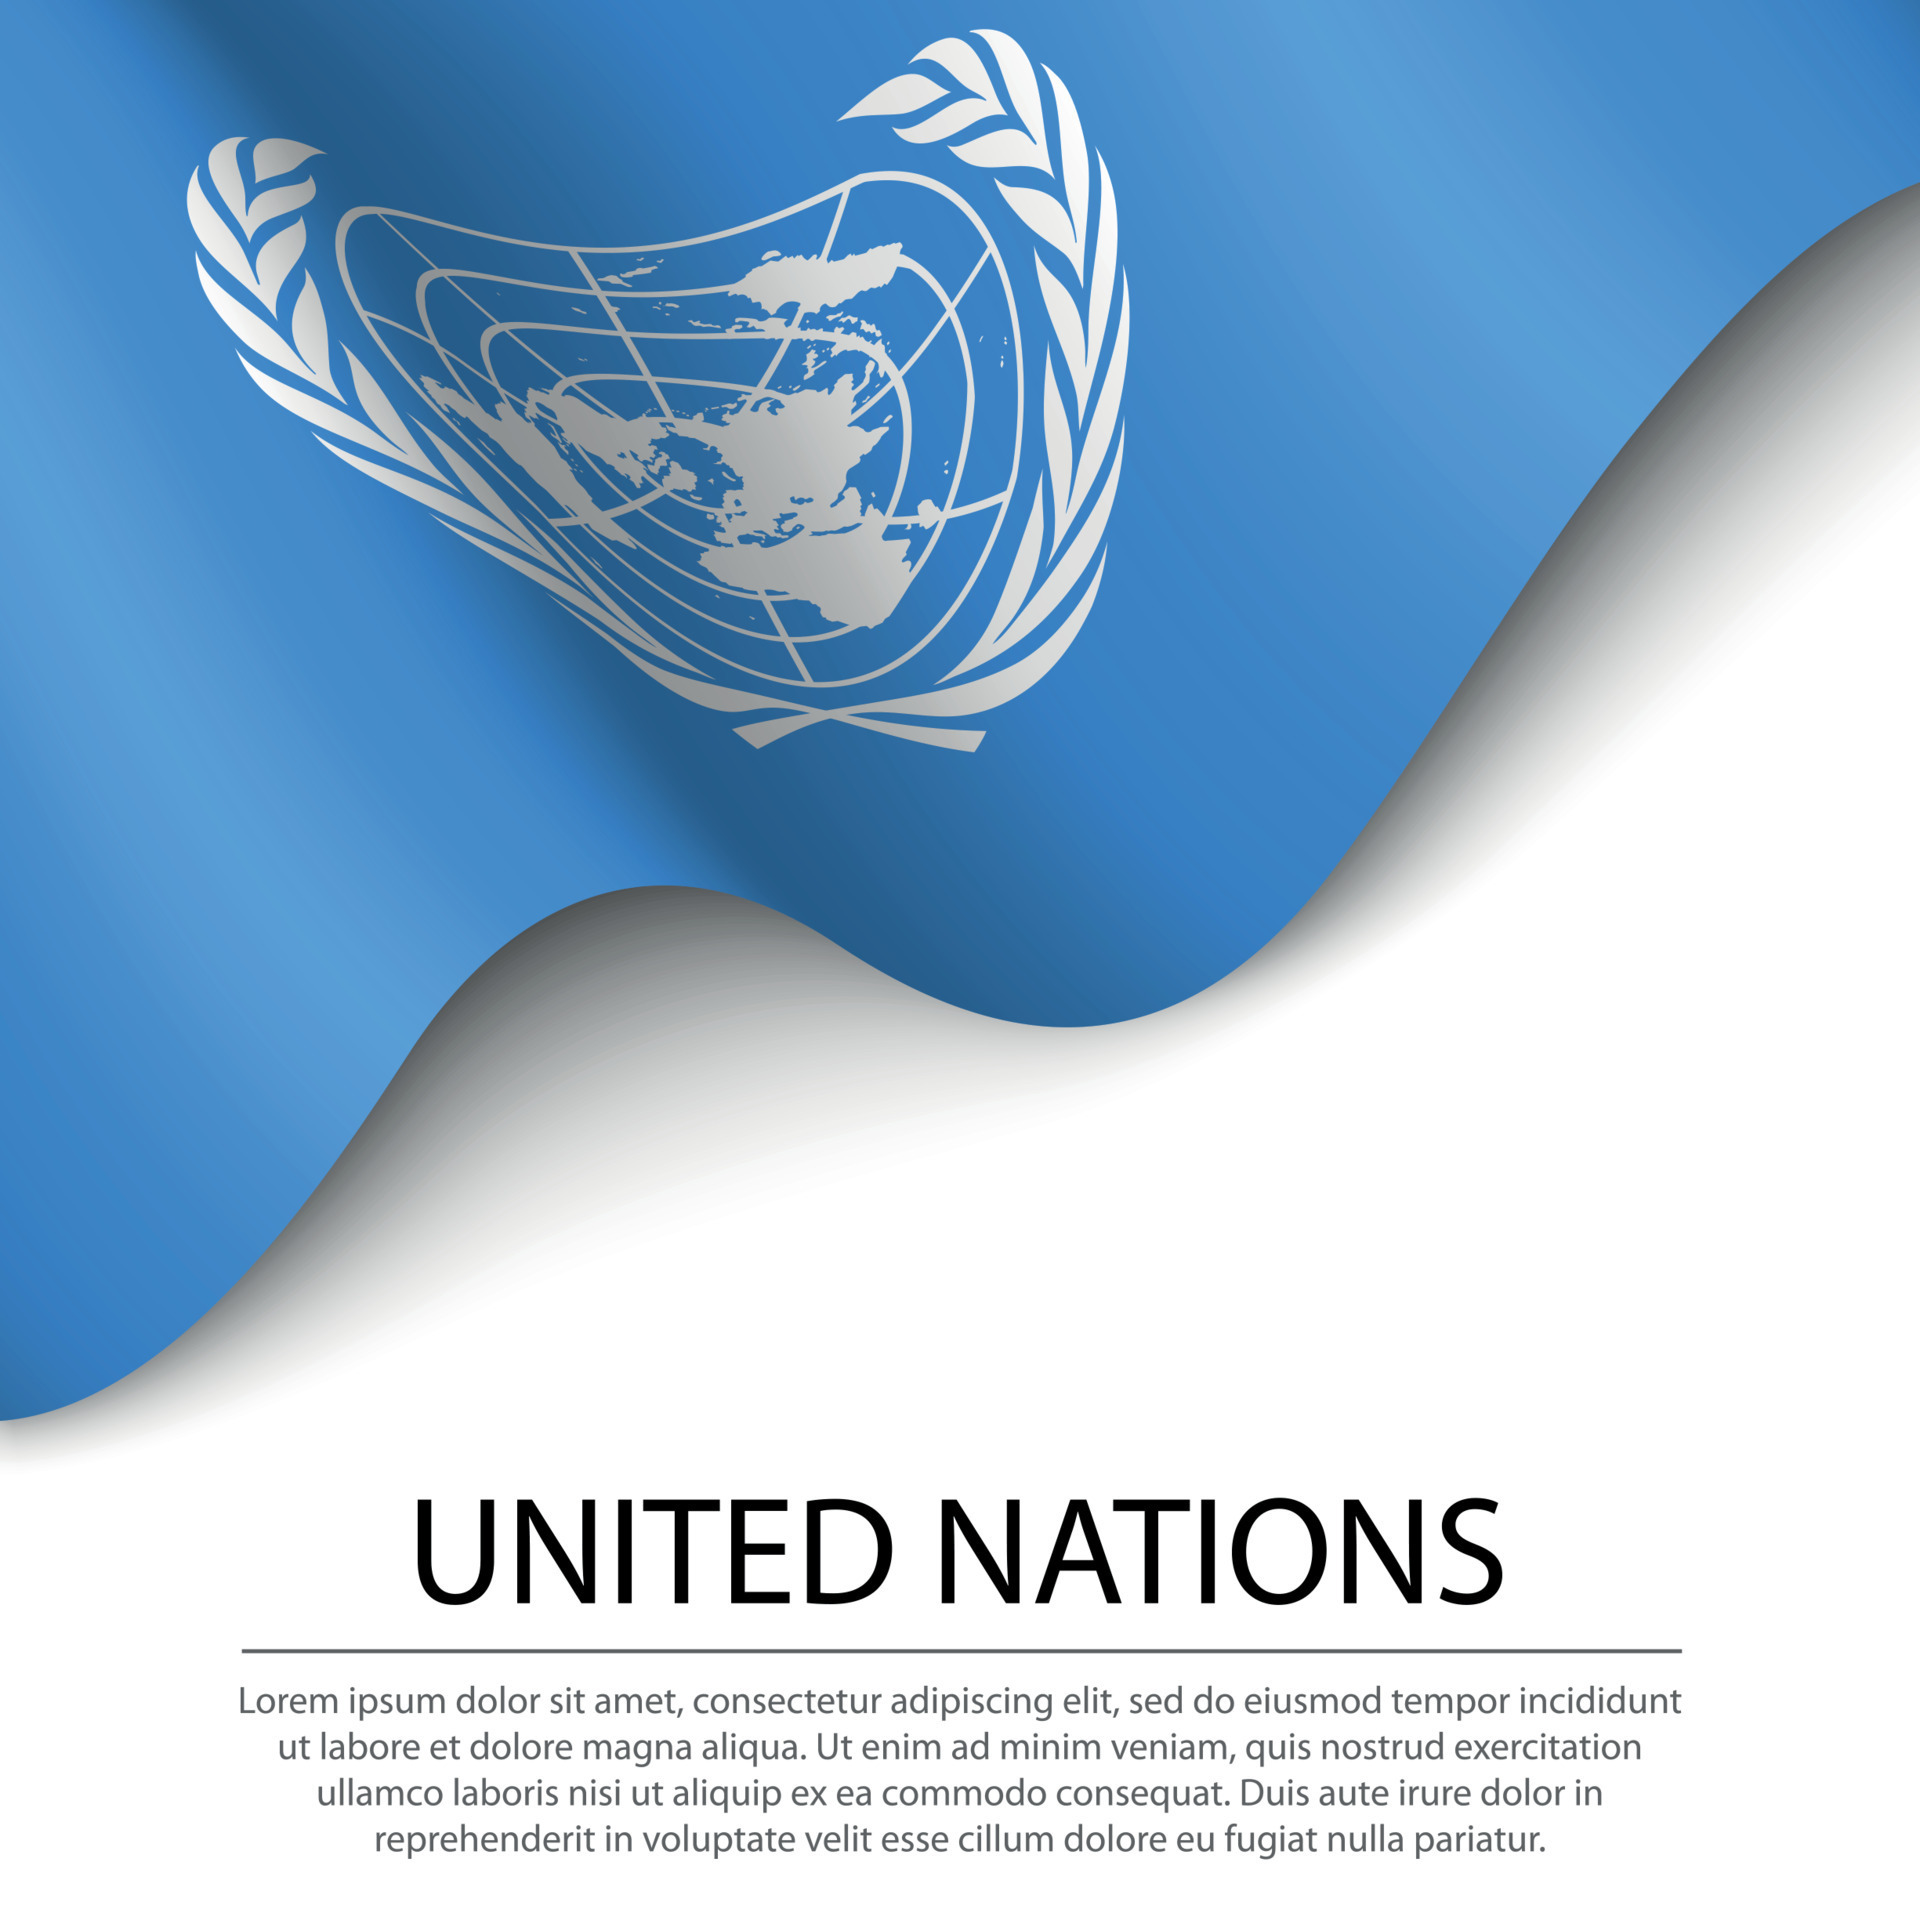 Cờ Liên Hiệp Quốc lung linh trên nền trắng là tuyên ngôn cho sự đoàn kết toàn cầu và giải quyết các vấn đề toàn cầu. Bức tranh này nhắc nhớ về mục tiêu của tổ chức này, đó là xây dựng một thế giới hòa bình và an toàn.